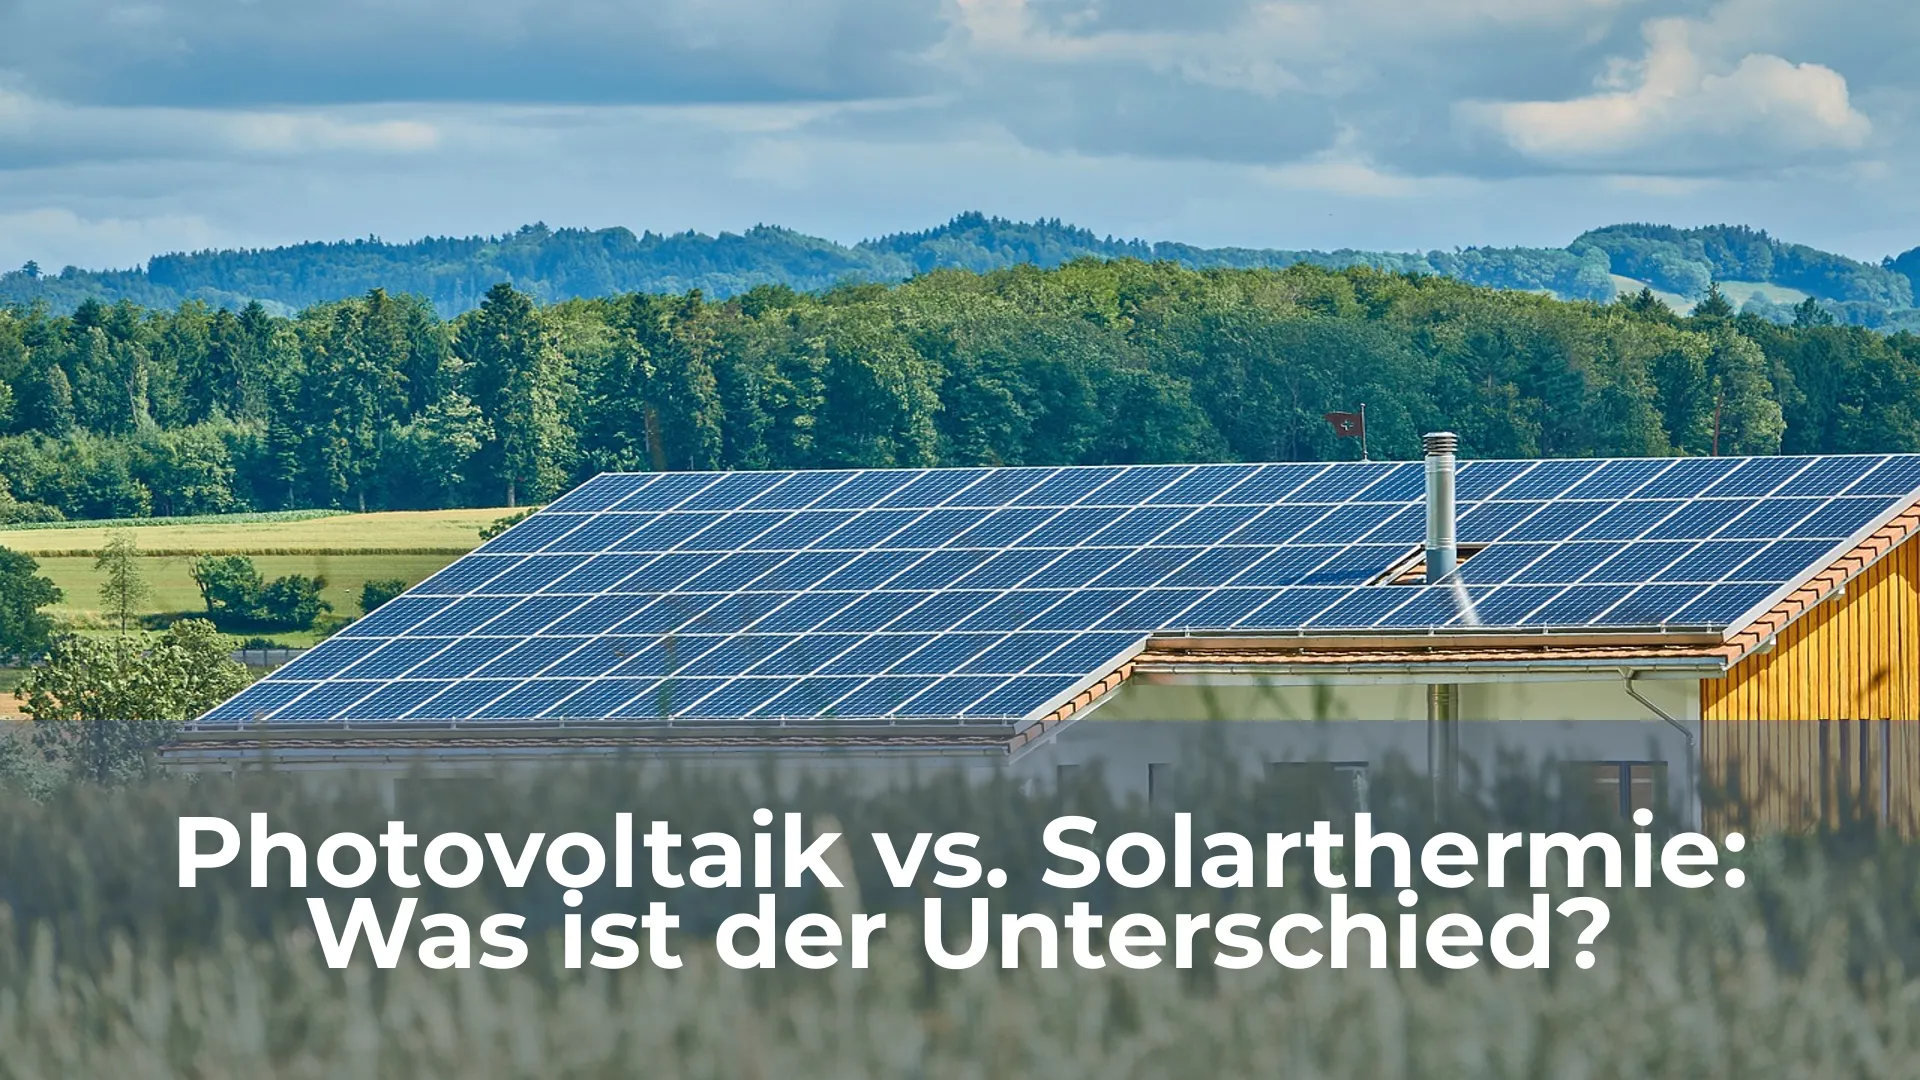 Photovoltaik vs solarthermie was ist der unterschied